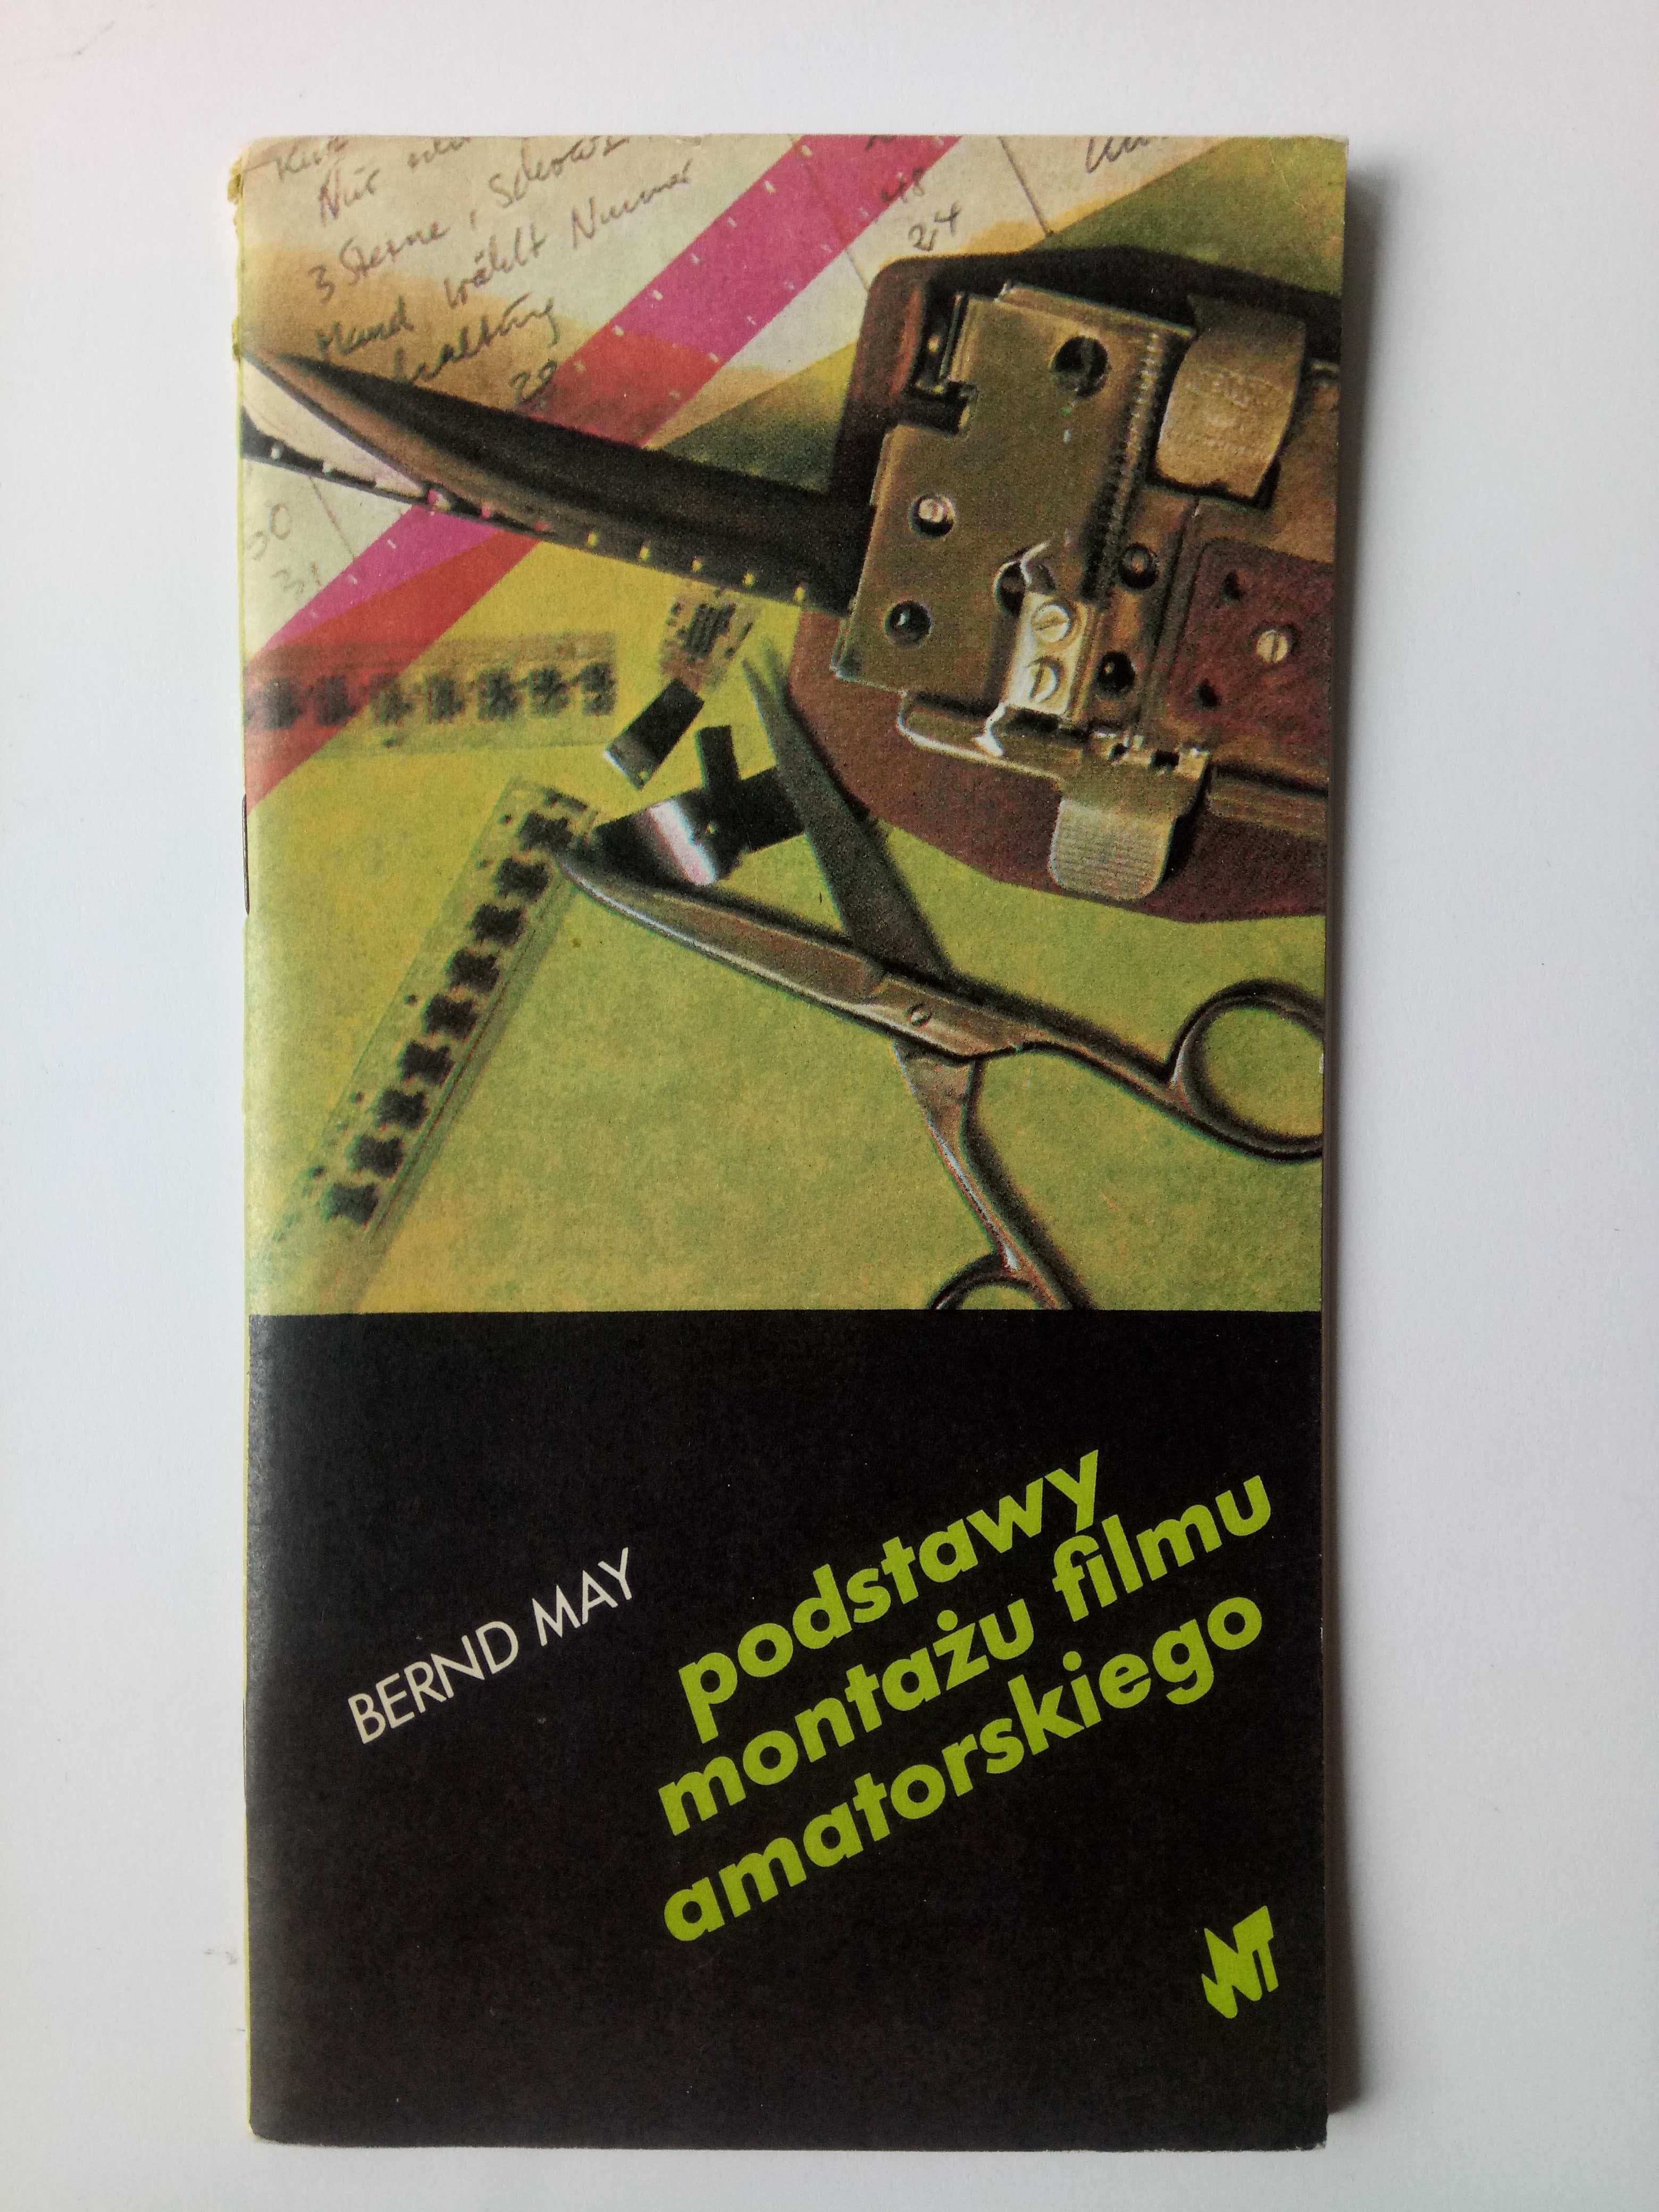 Podstawy montażu filmu amatorskiego Bernd May